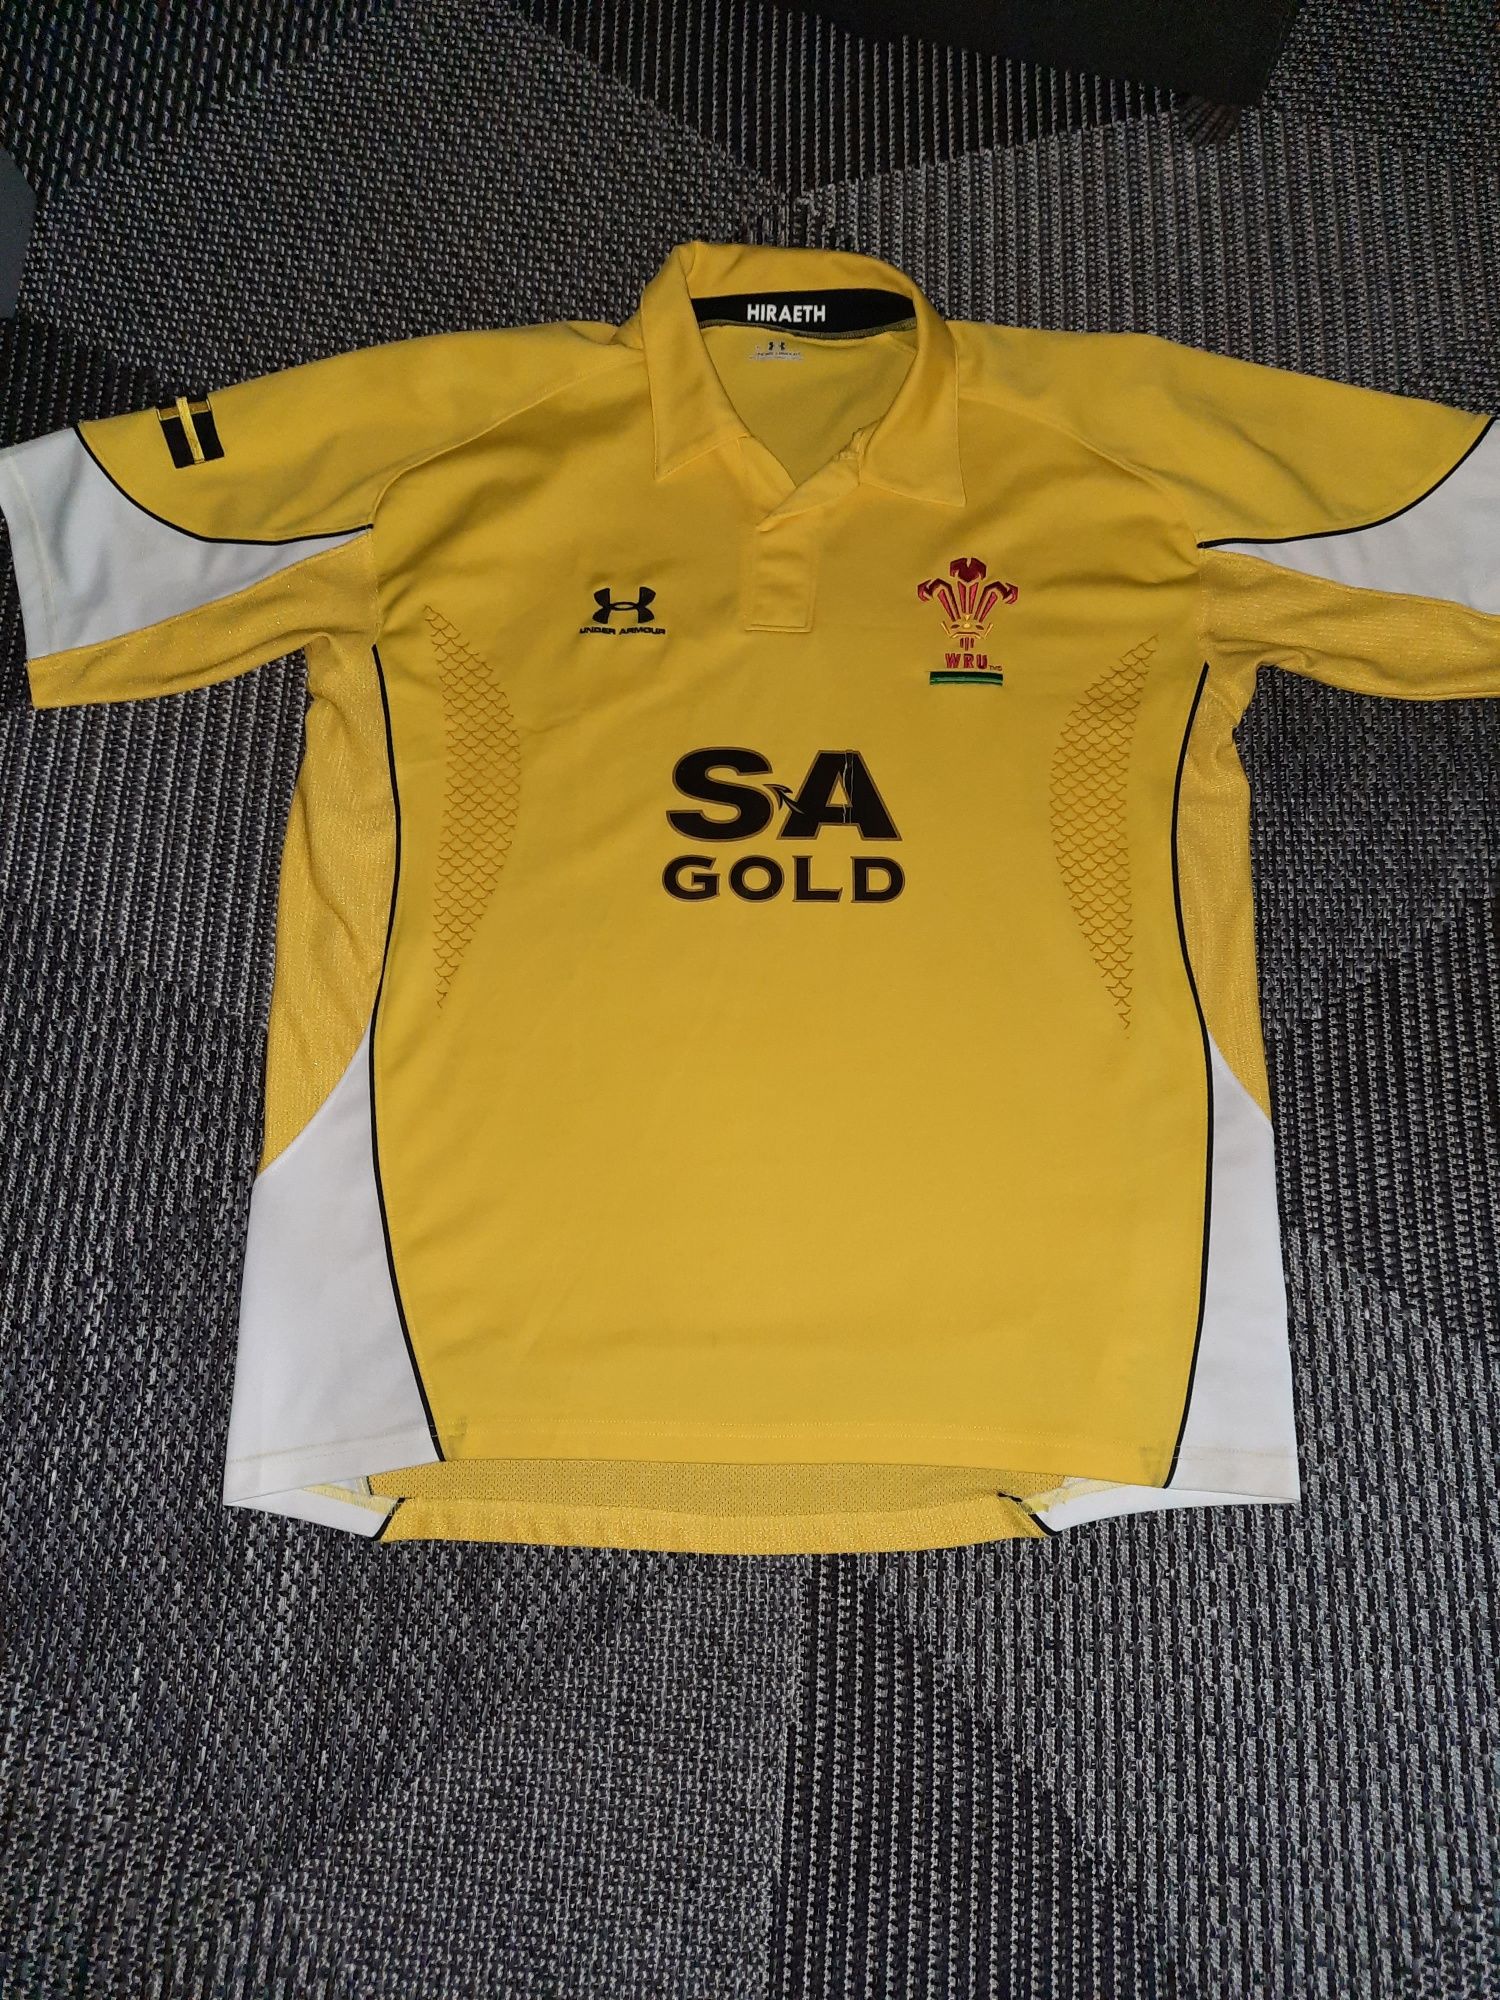 koszuka piłkarska rugby Walia Under Armour, XL, WRU, sezon 2008/2009